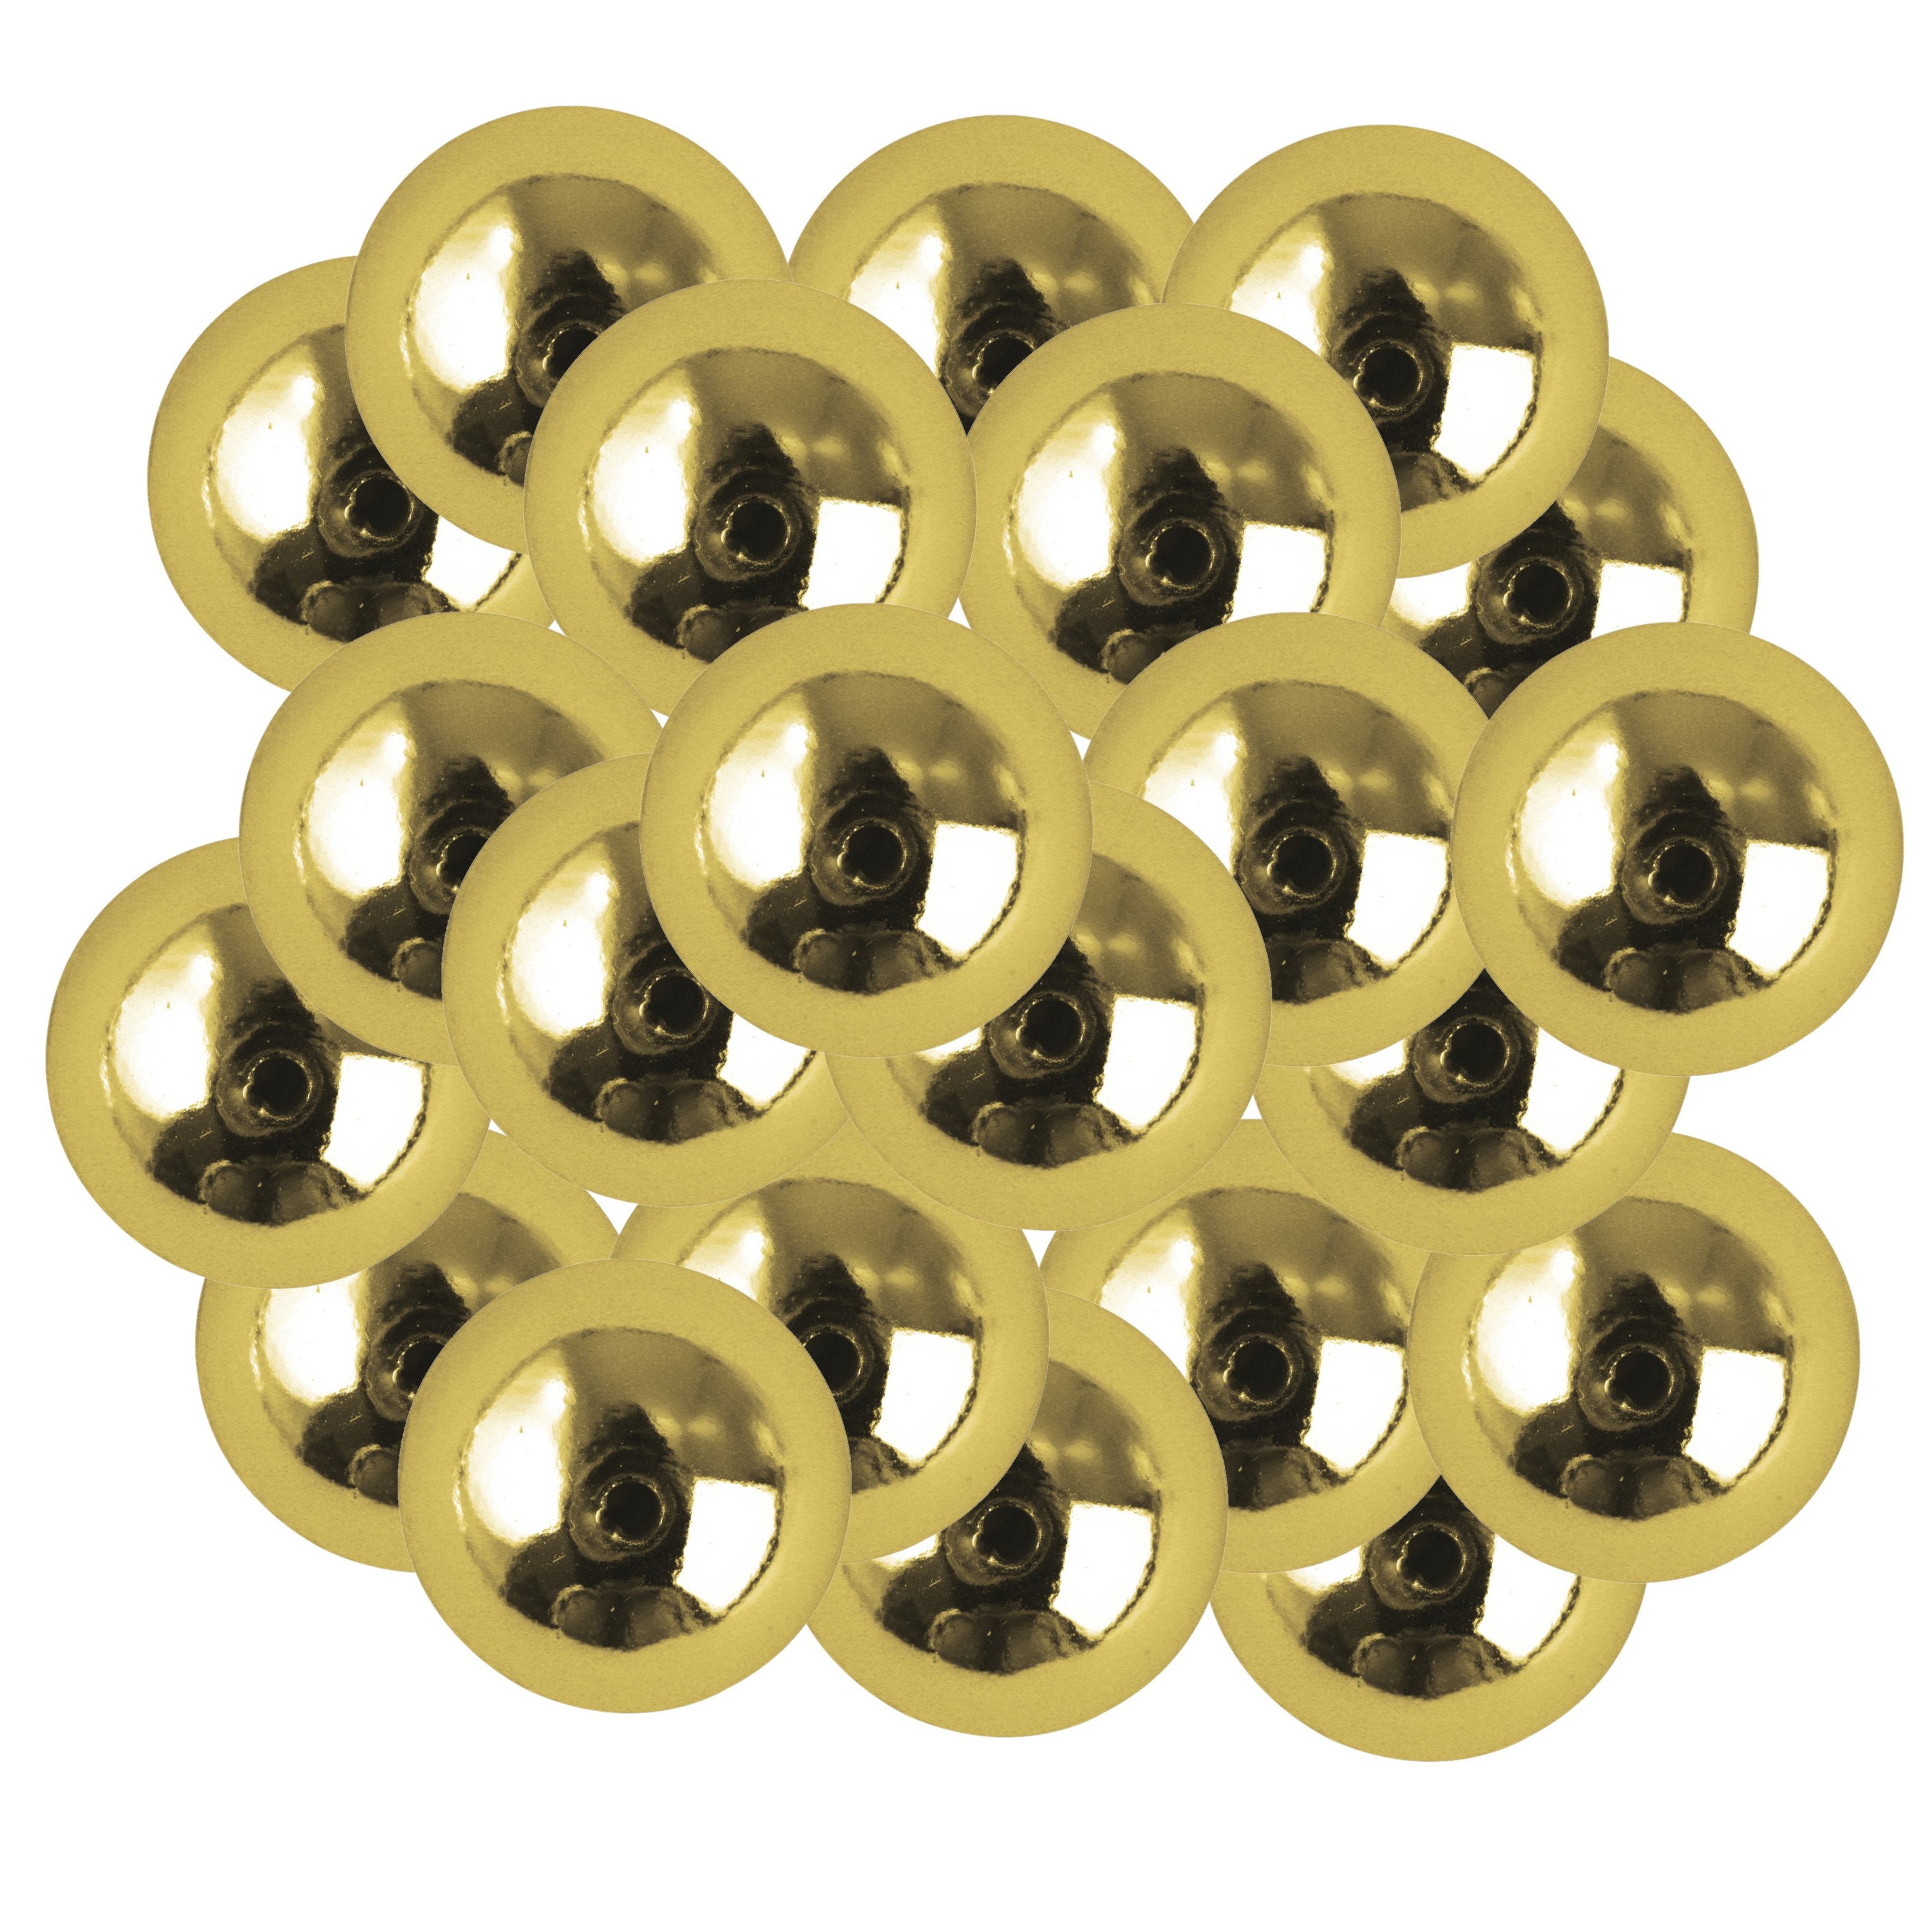 Rayher Hobby 22x stuks gouden plastic hobby kralen van 10 mm - Zelf sieraden maken - armbandjes/kettingen